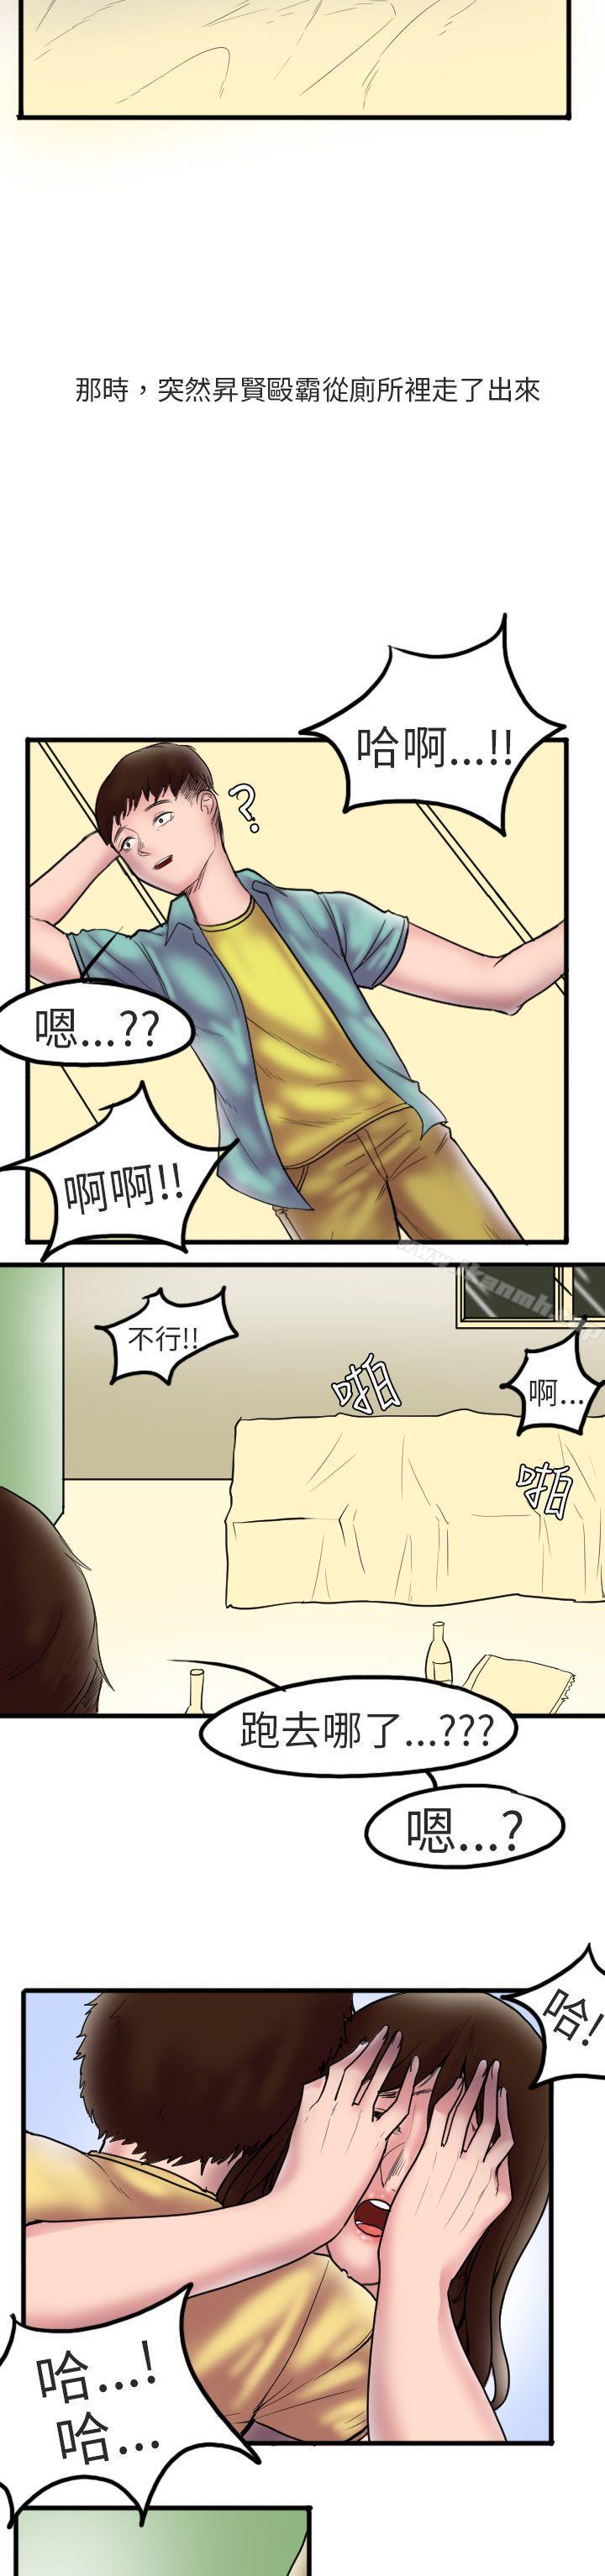 漫画韩国 秘密Story第二季   - 立即阅读 第二季 床與牆壁之間(上)第15漫画图片